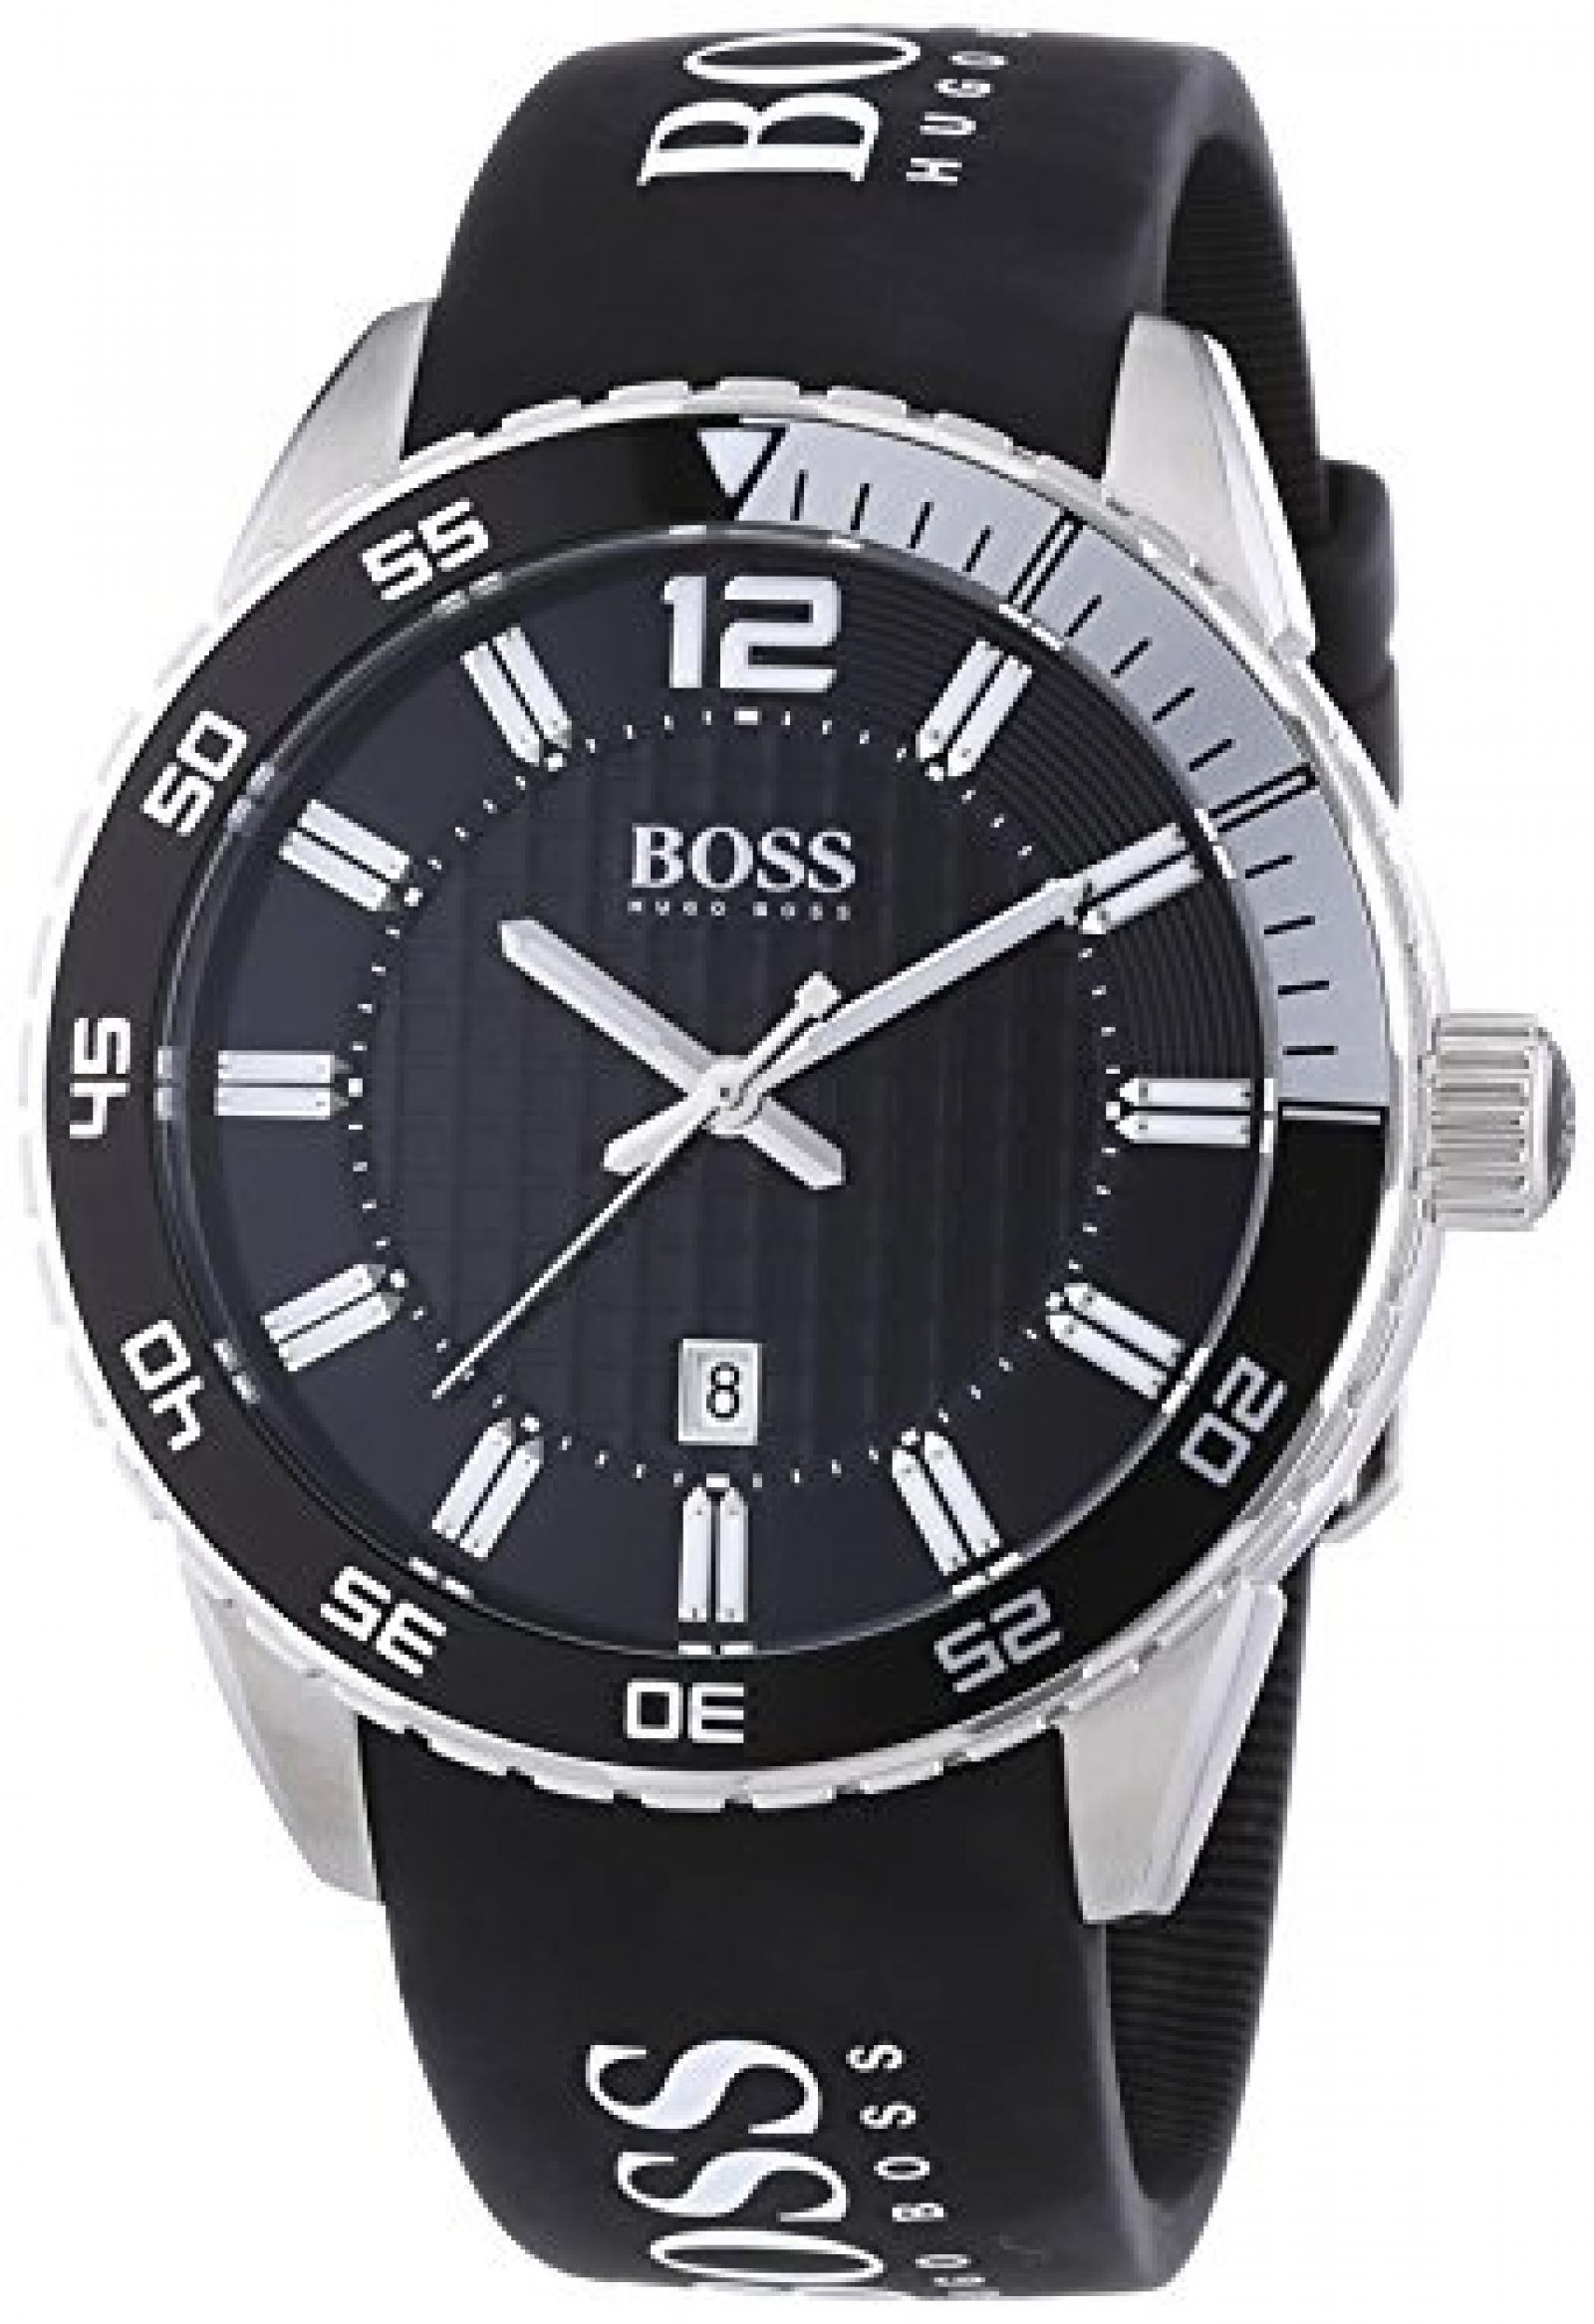 Hugo Boss Herren-Armbanduhr XL Analog Quarz Silikon 1512888 